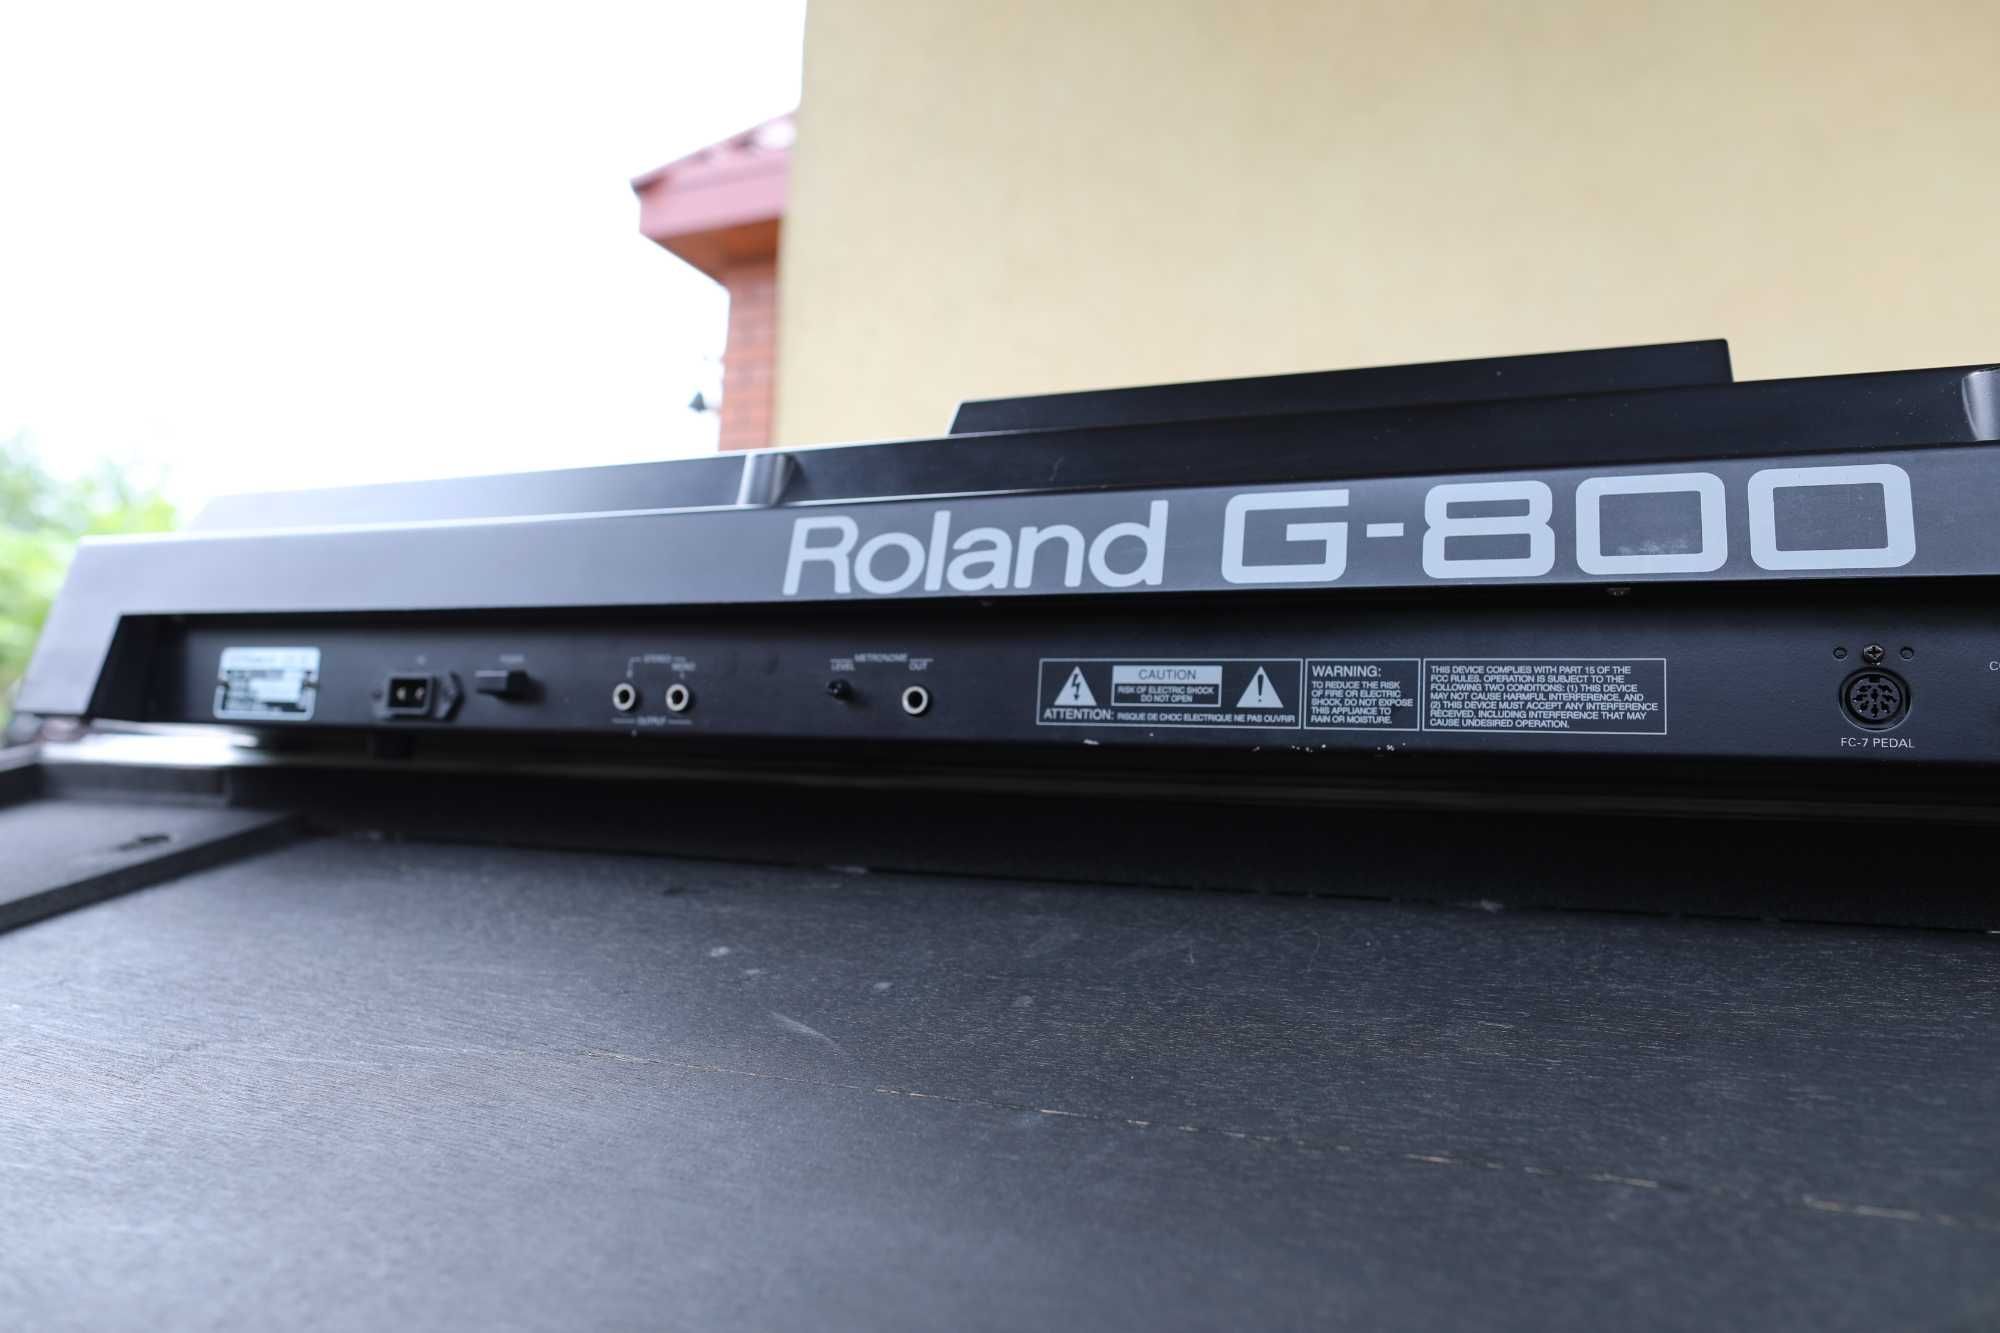 ROLAND G800 aranż. workst-genialny kompz. zamiana synth. moog lub rack